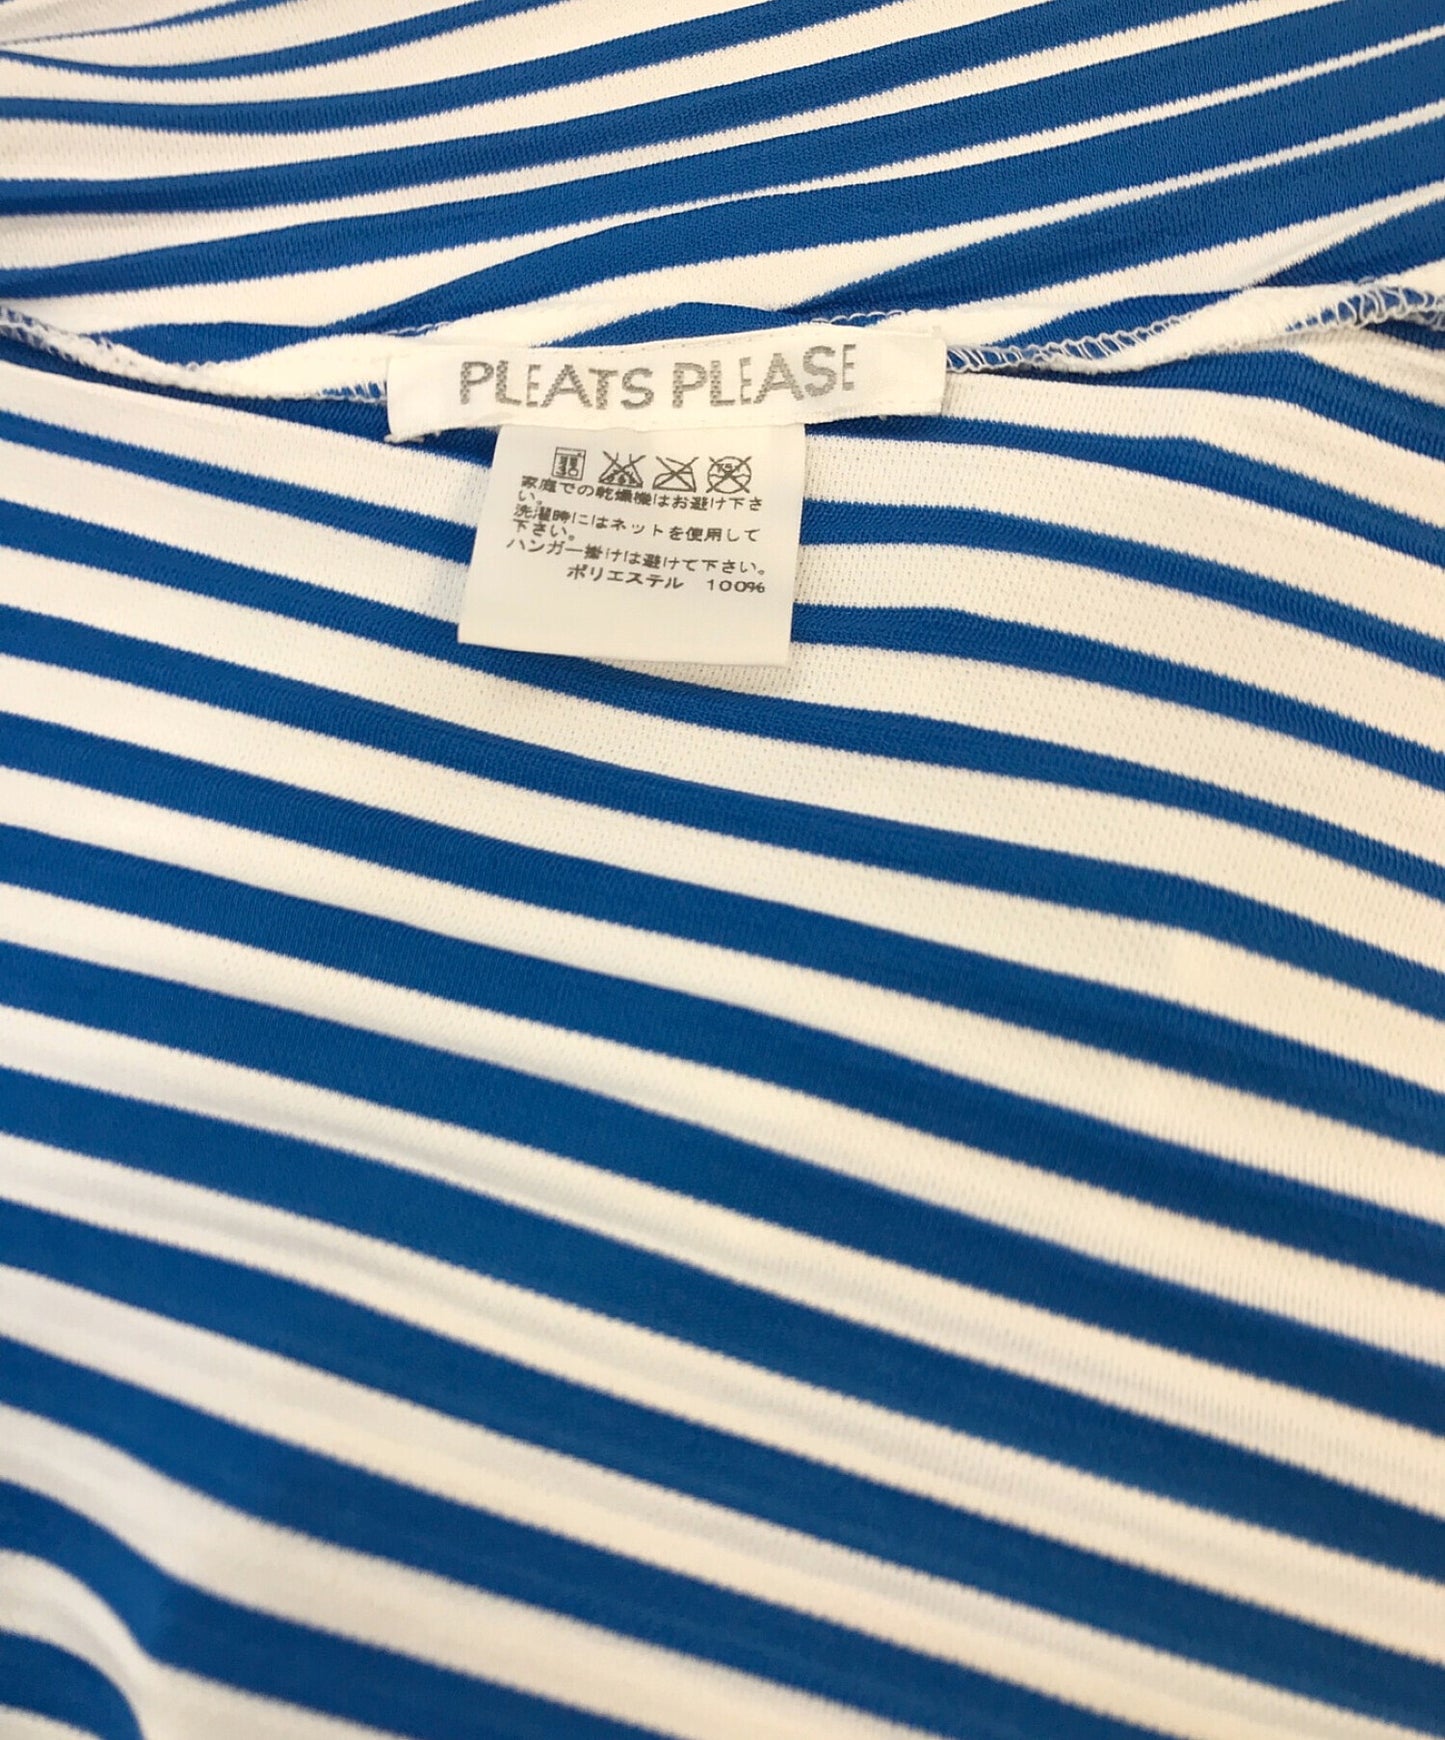 褶皺請打pleated Stripe Dress PP61-JT563